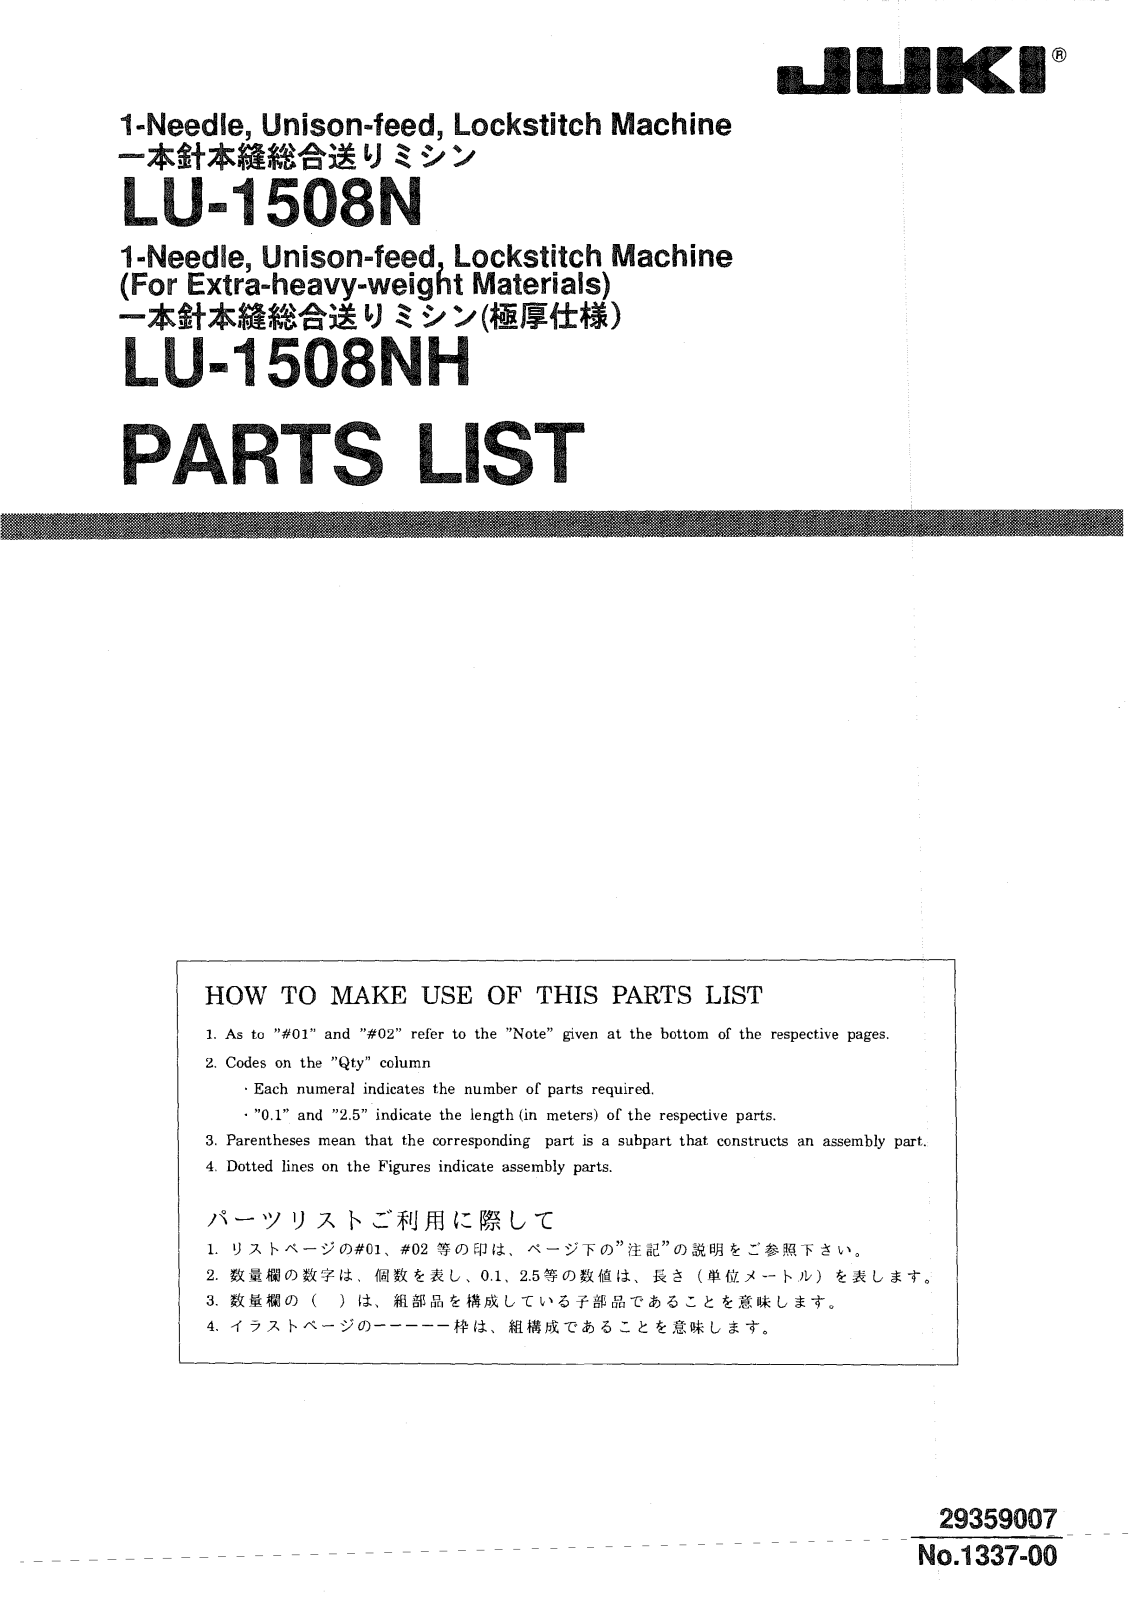 JUKI LU-1508N, LU-1508NH Parts List